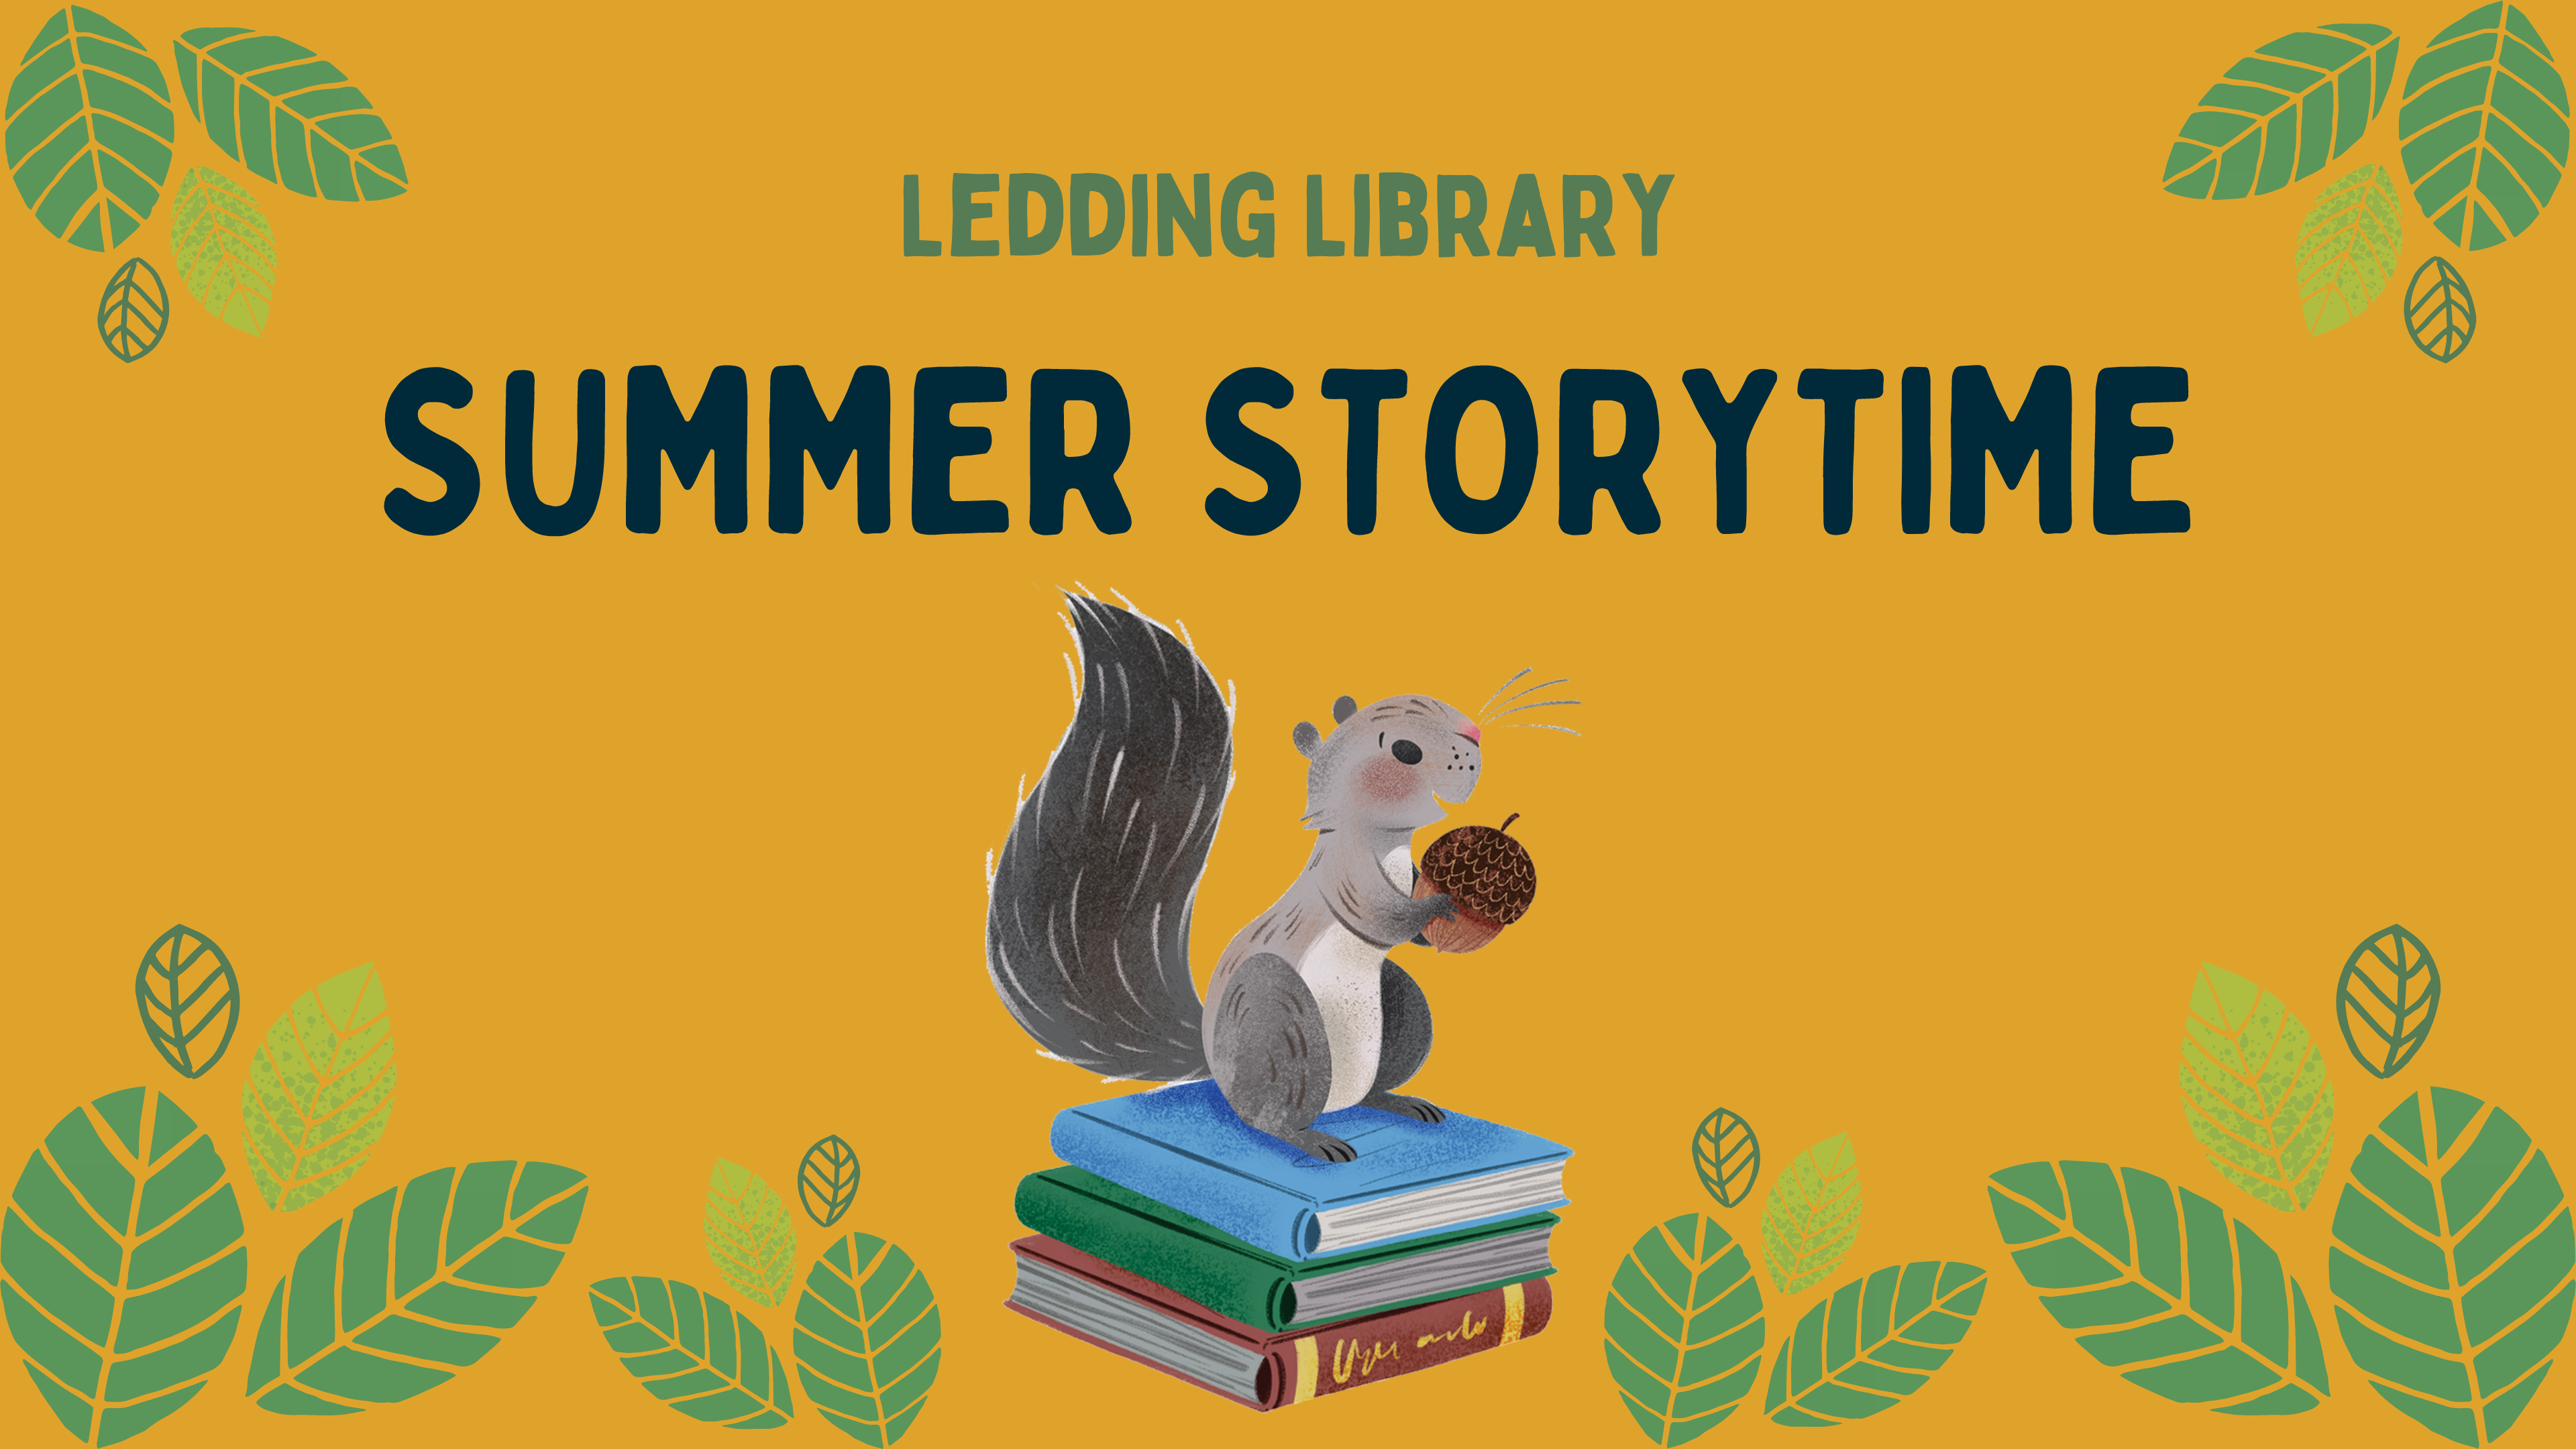 Ledding Library Summer Storytime